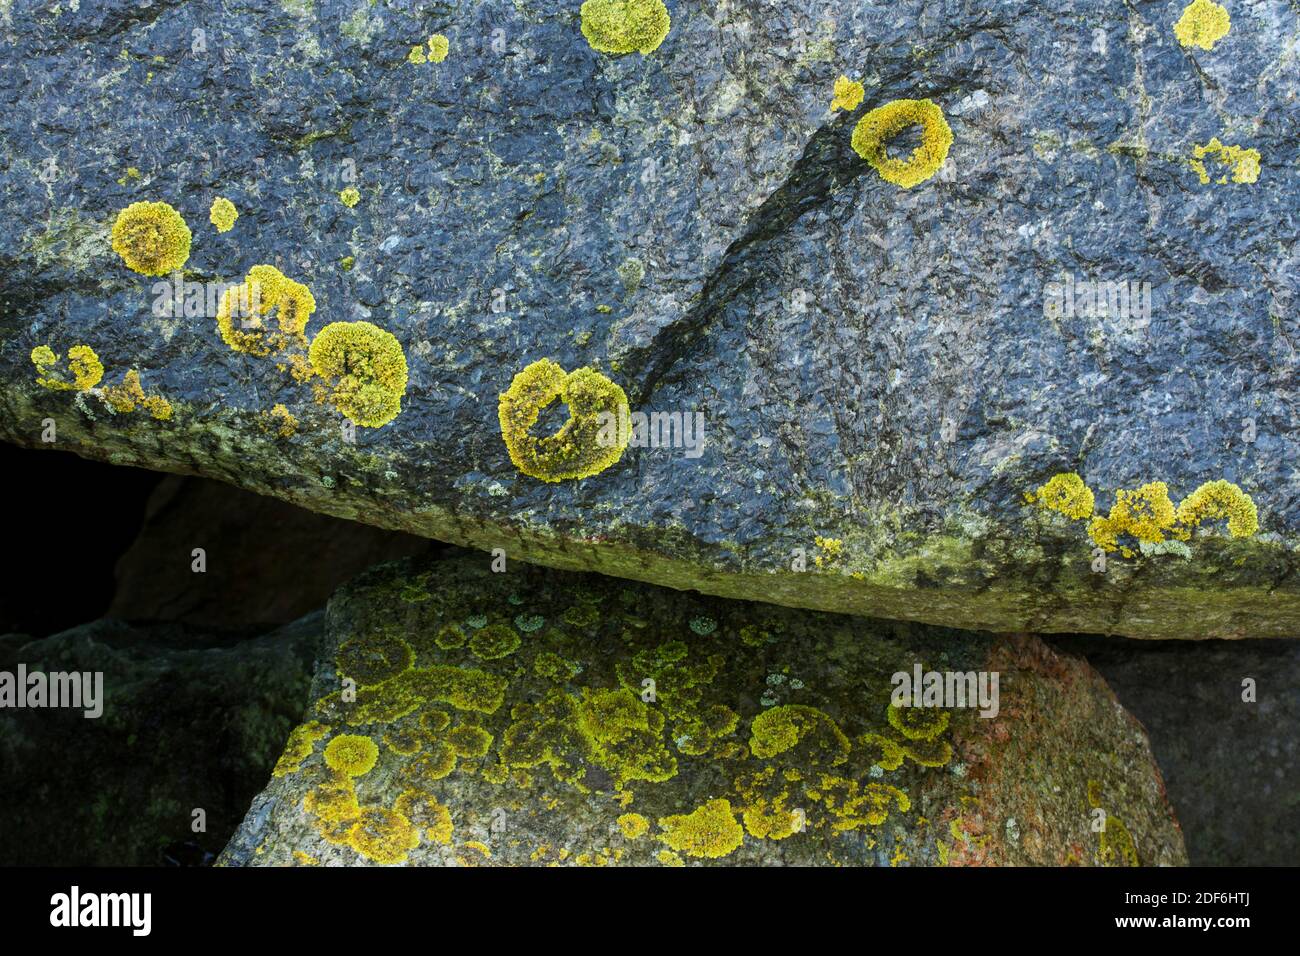 Comune dei Licheni gialli, la crosta dorata è altamente tollerante al sale e prospererà su rocce e alberi vicino al segno di alta marea. Foto Stock